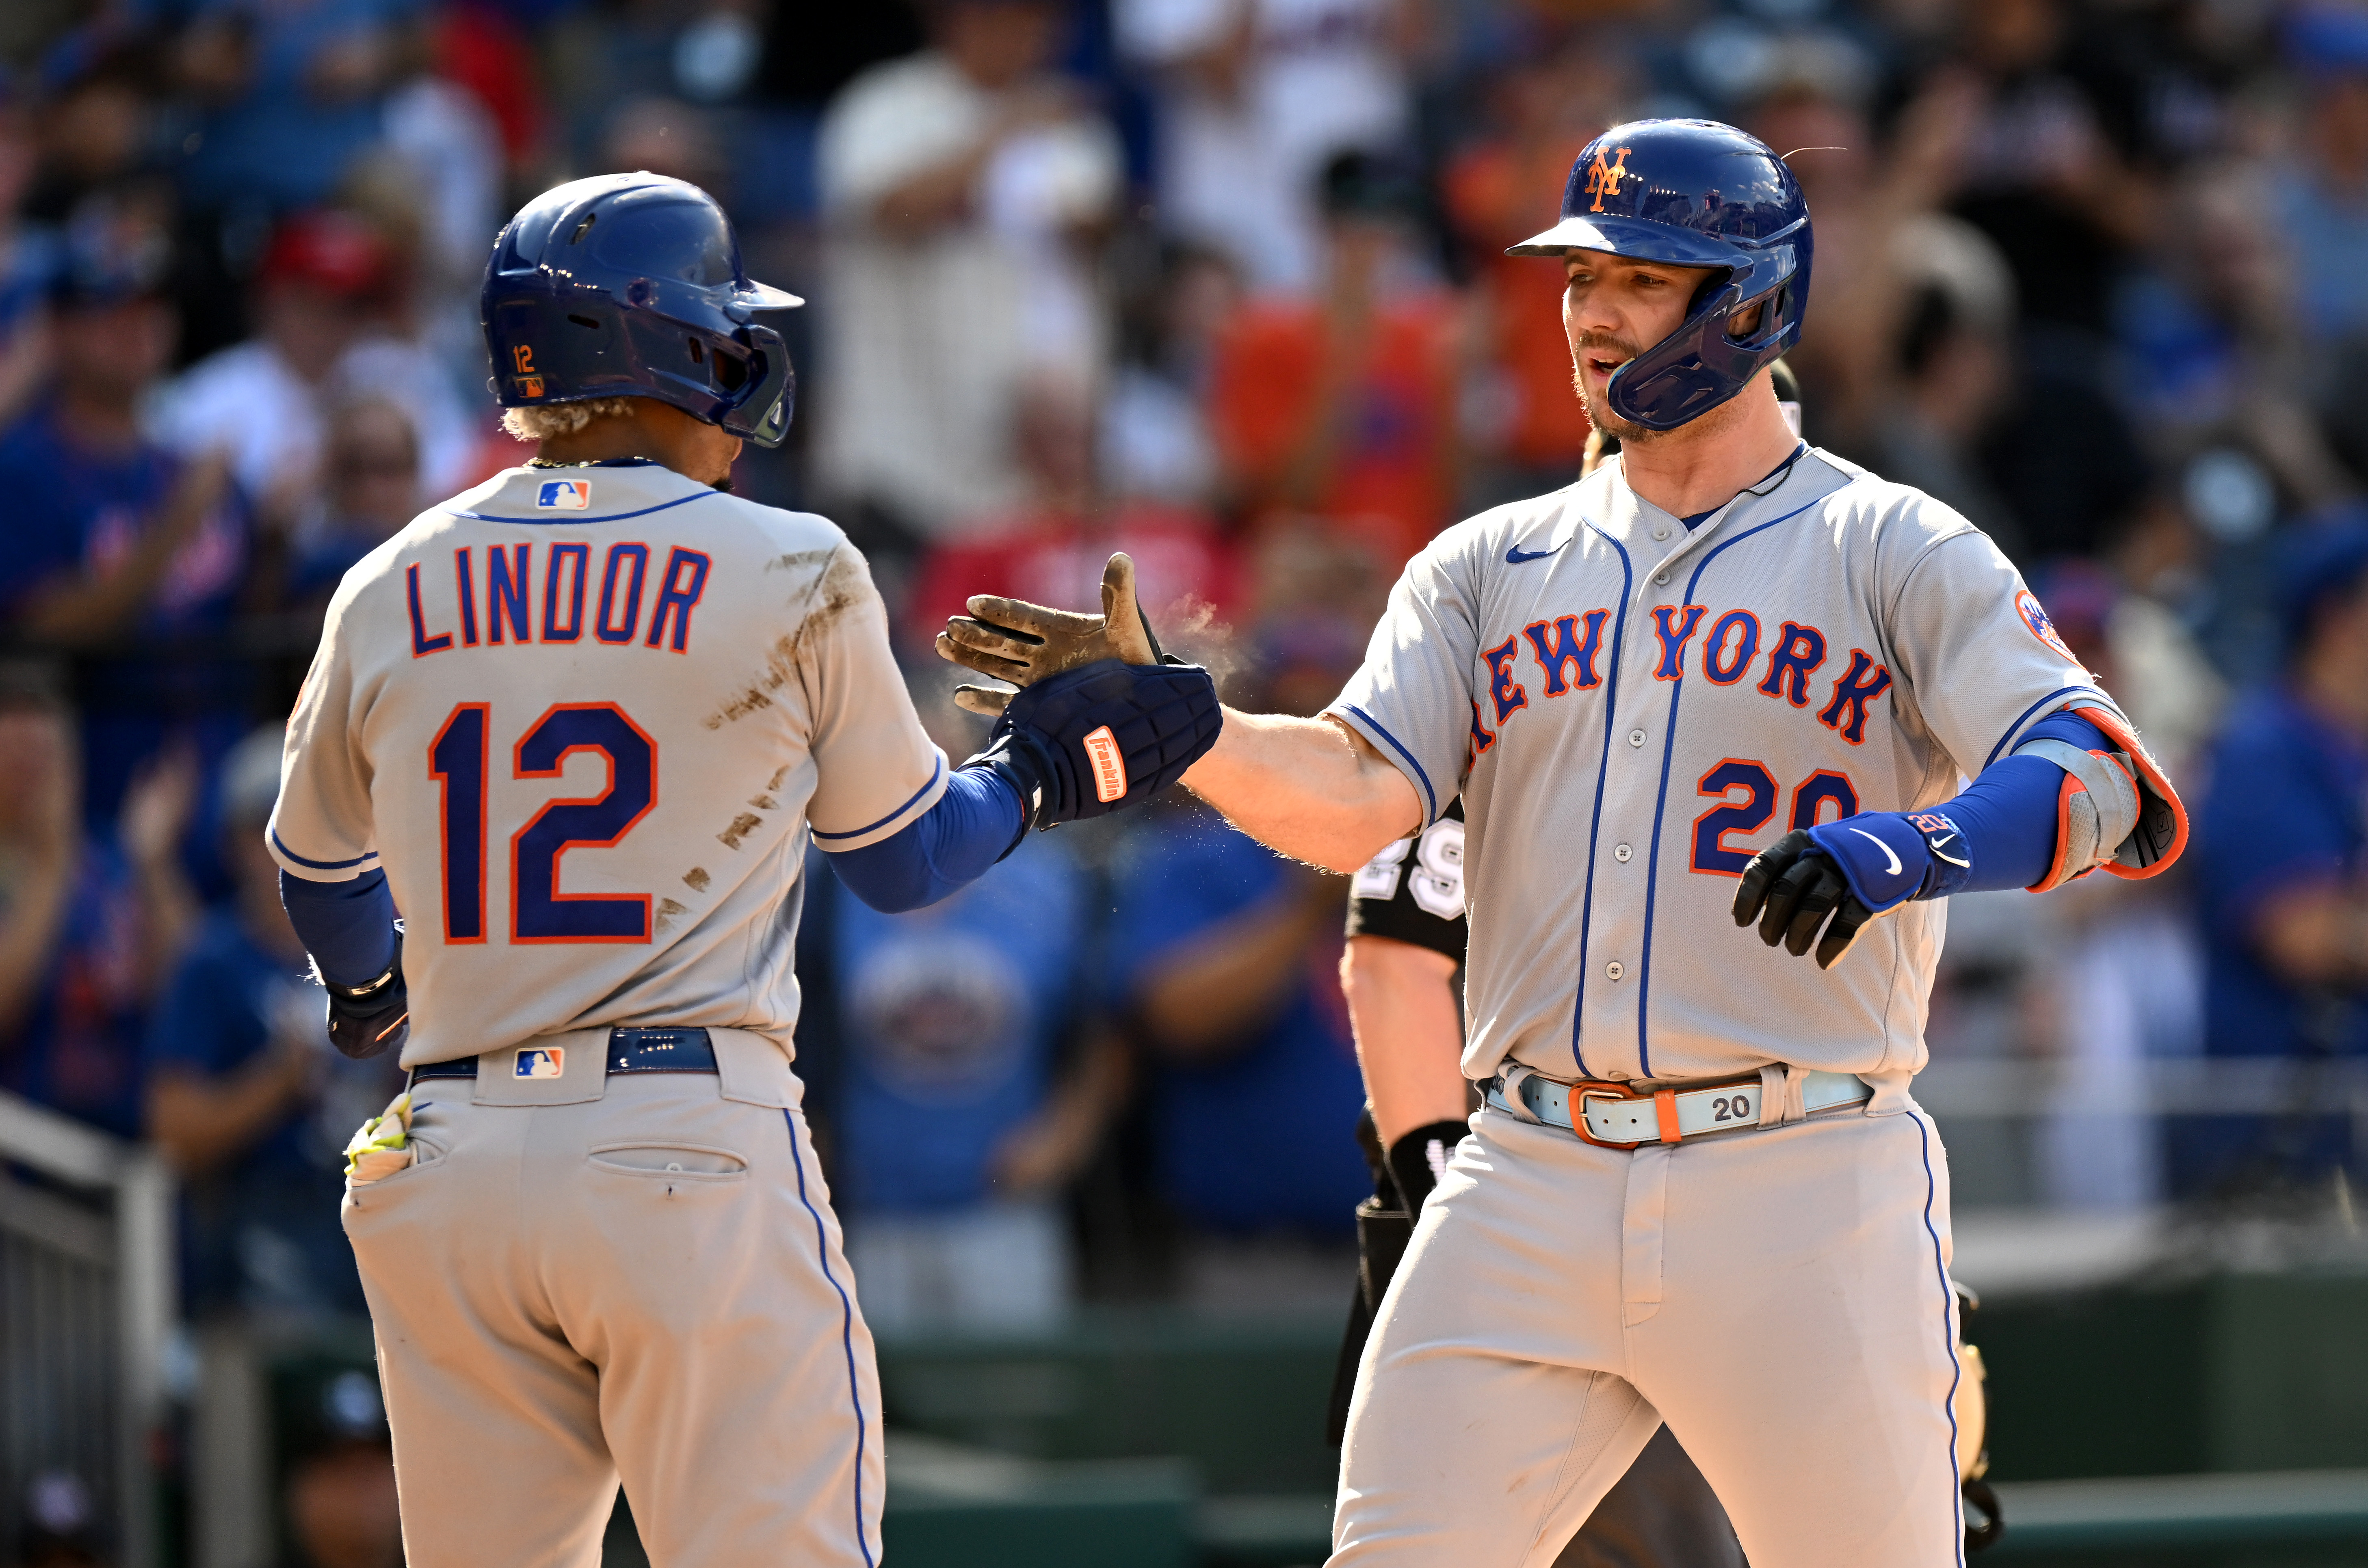 In blockbuster trade, Mets add All-Star shortstop Francisco Lindor